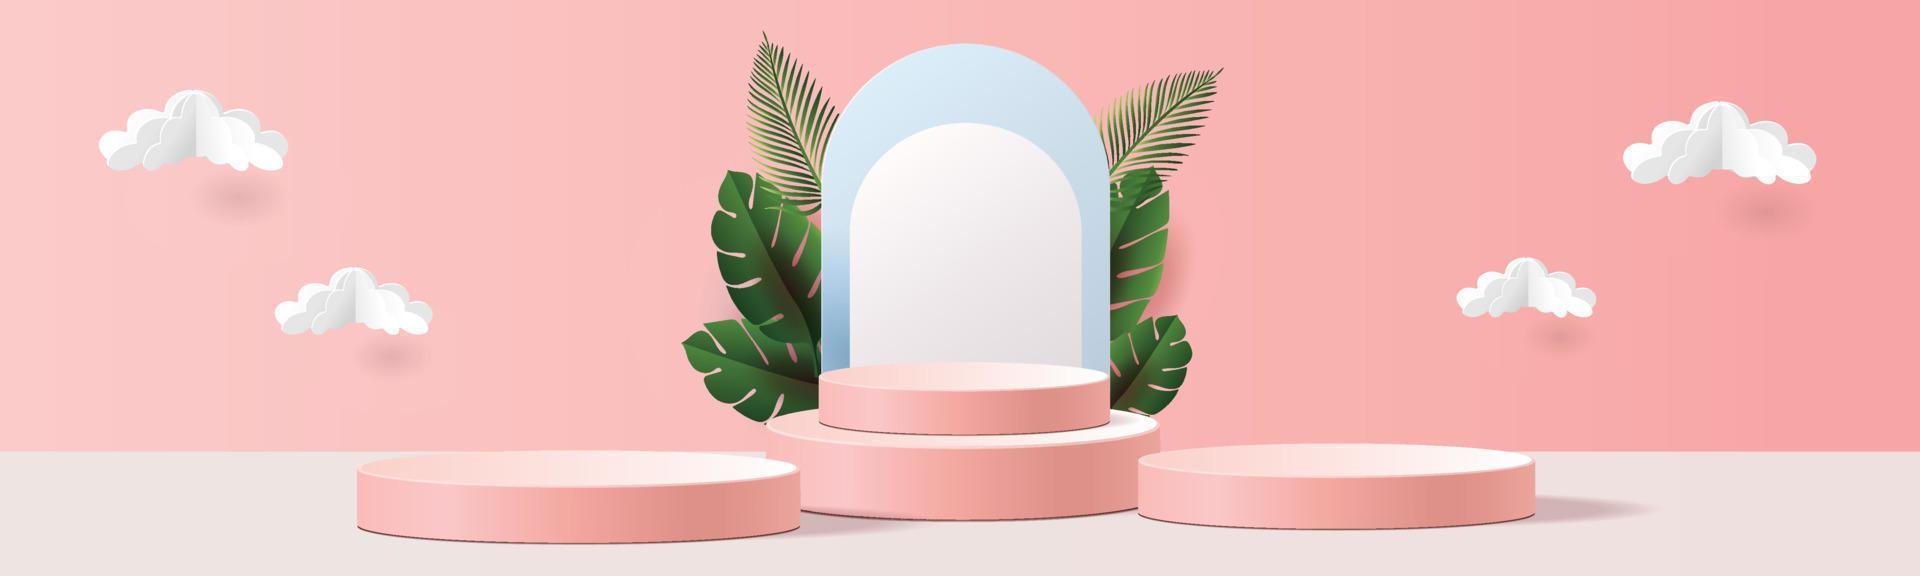 3d geometrisch podiummodel blad tropisch netural concept voor showcase roze blauwe achtergrond abstracte minimale scène productpresentatie vectorillustation vector